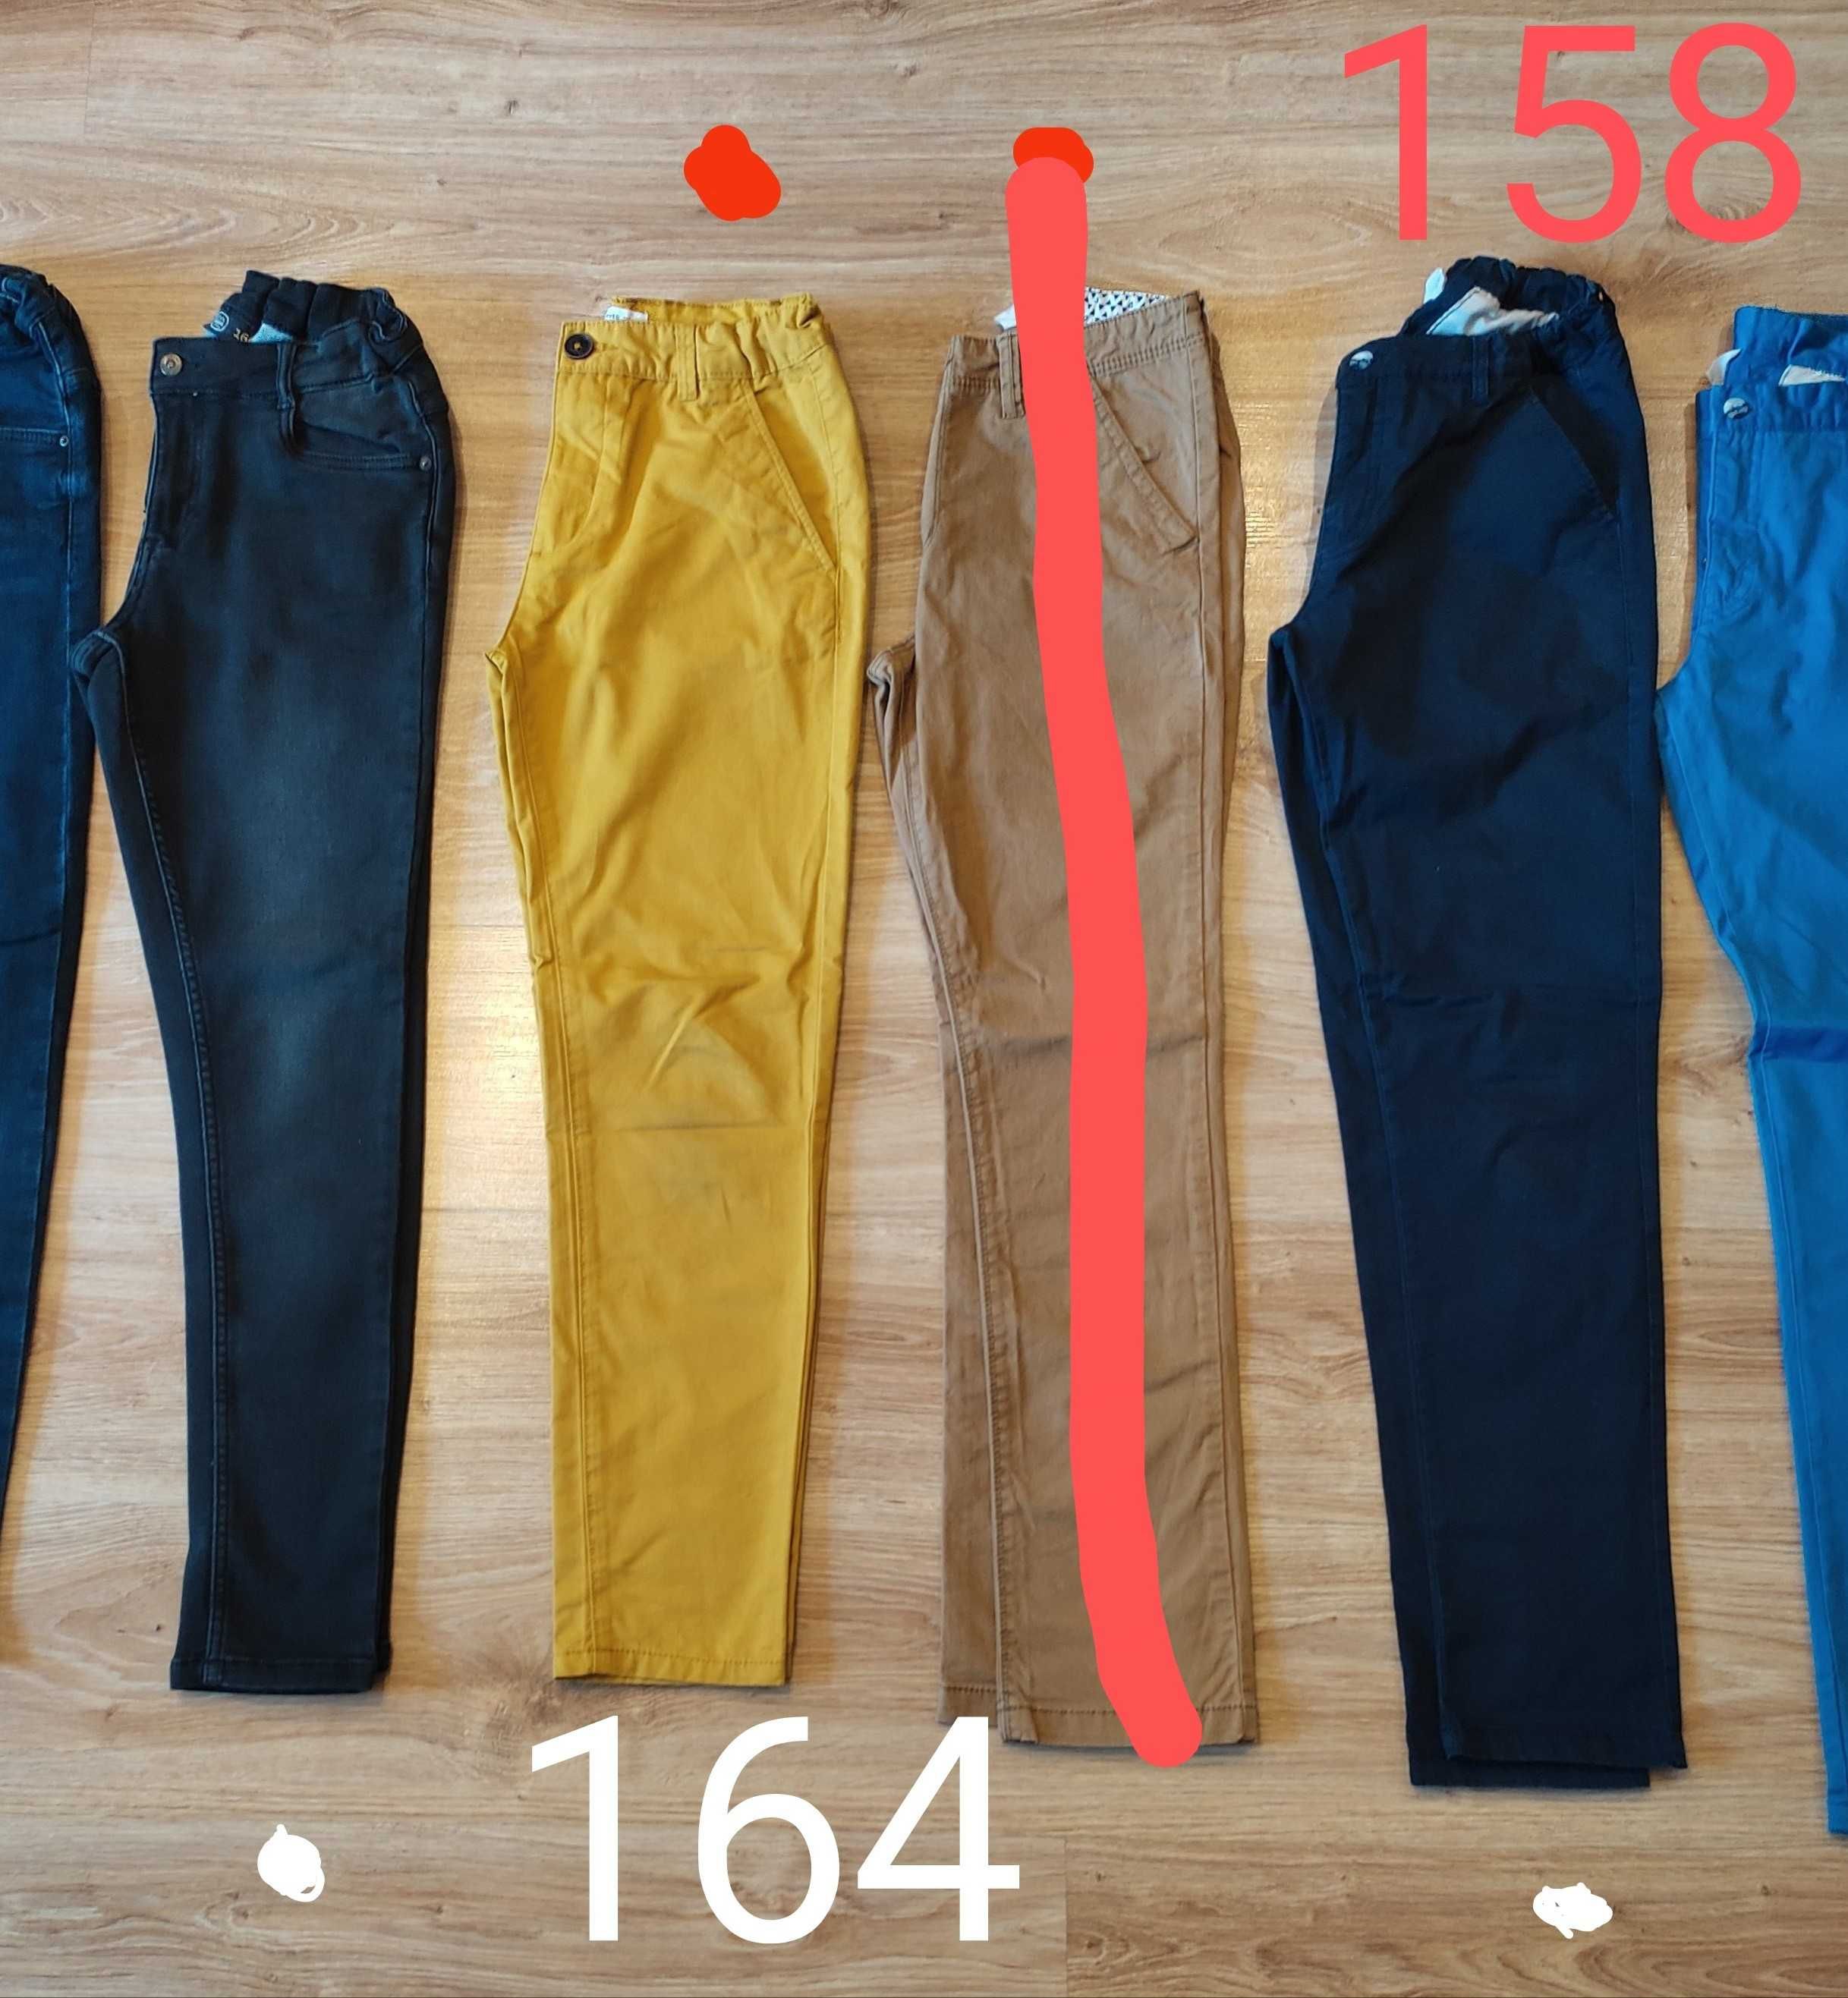 158/164 bluza i spodnie jeansowe komplet zestaw